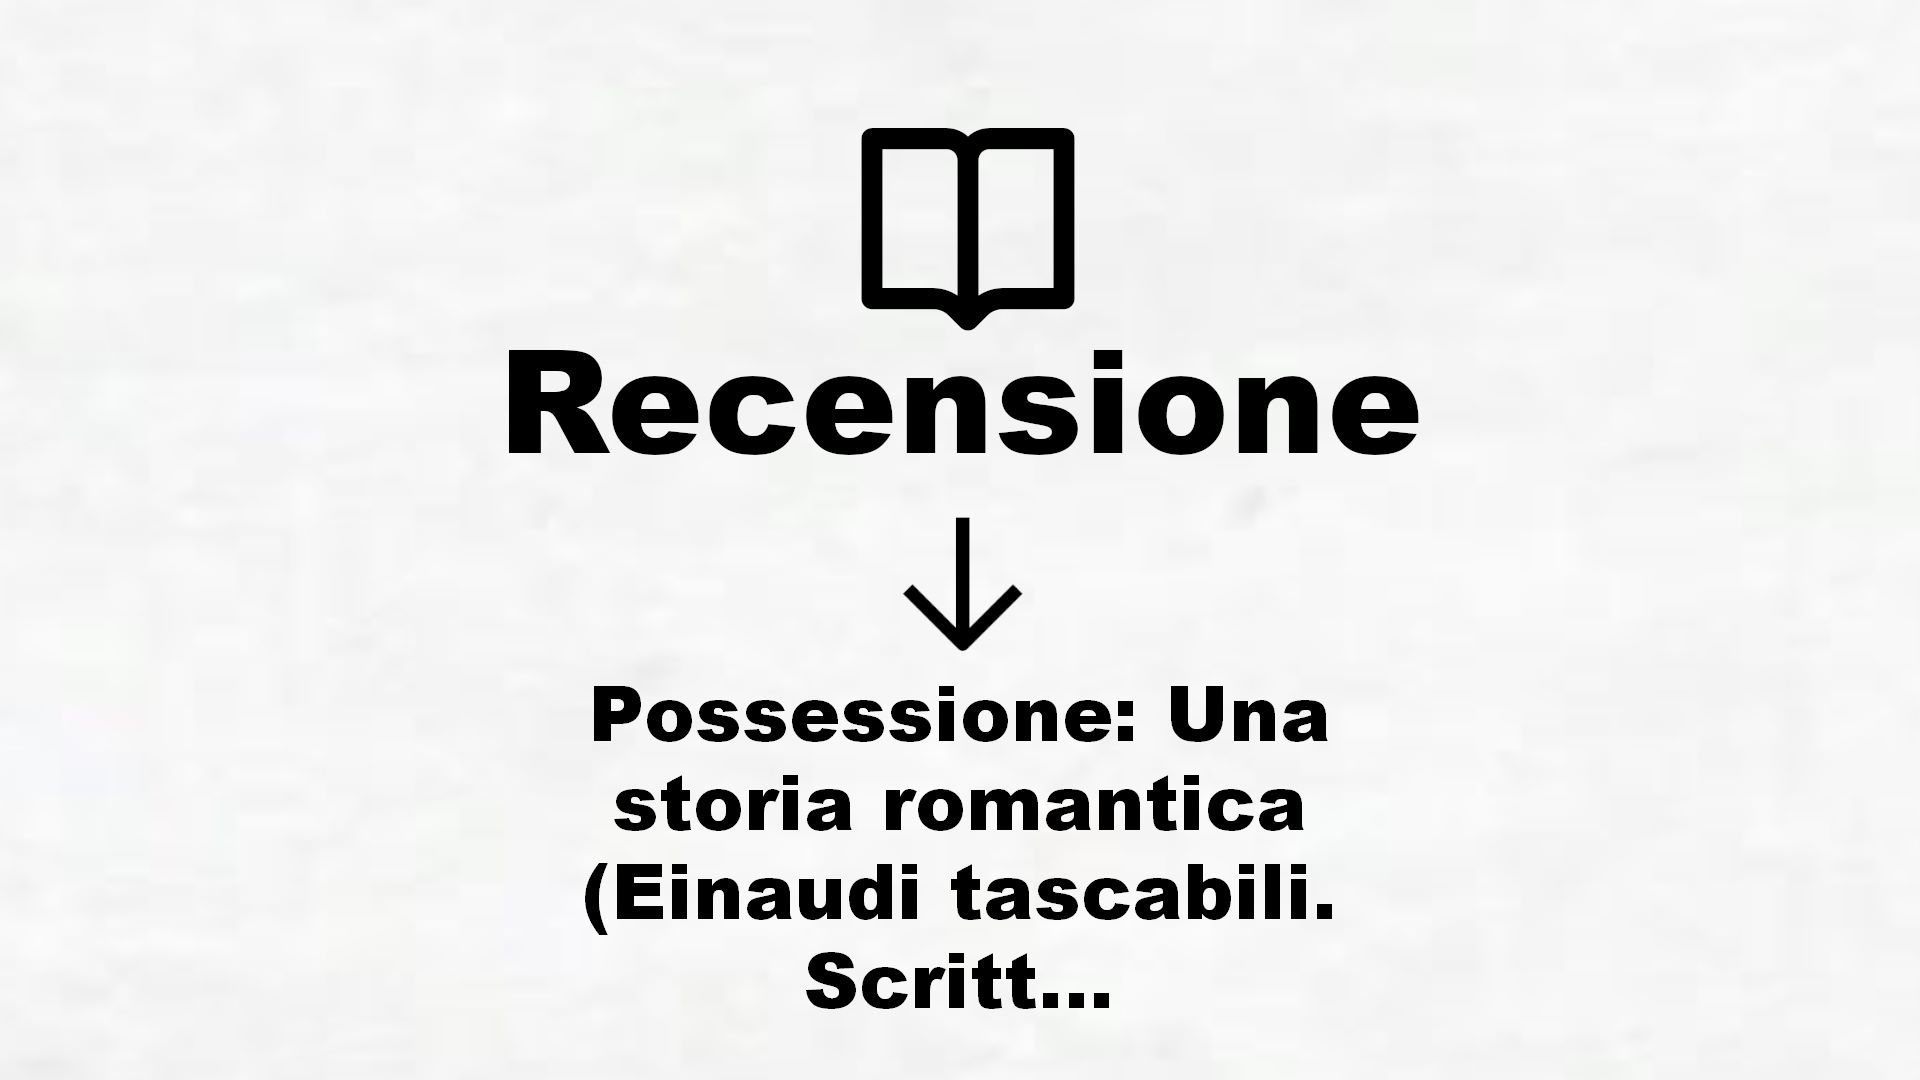 Possessione: Una storia romantica (Einaudi tascabili. Scrittori Vol. 245) – Recensione Libro